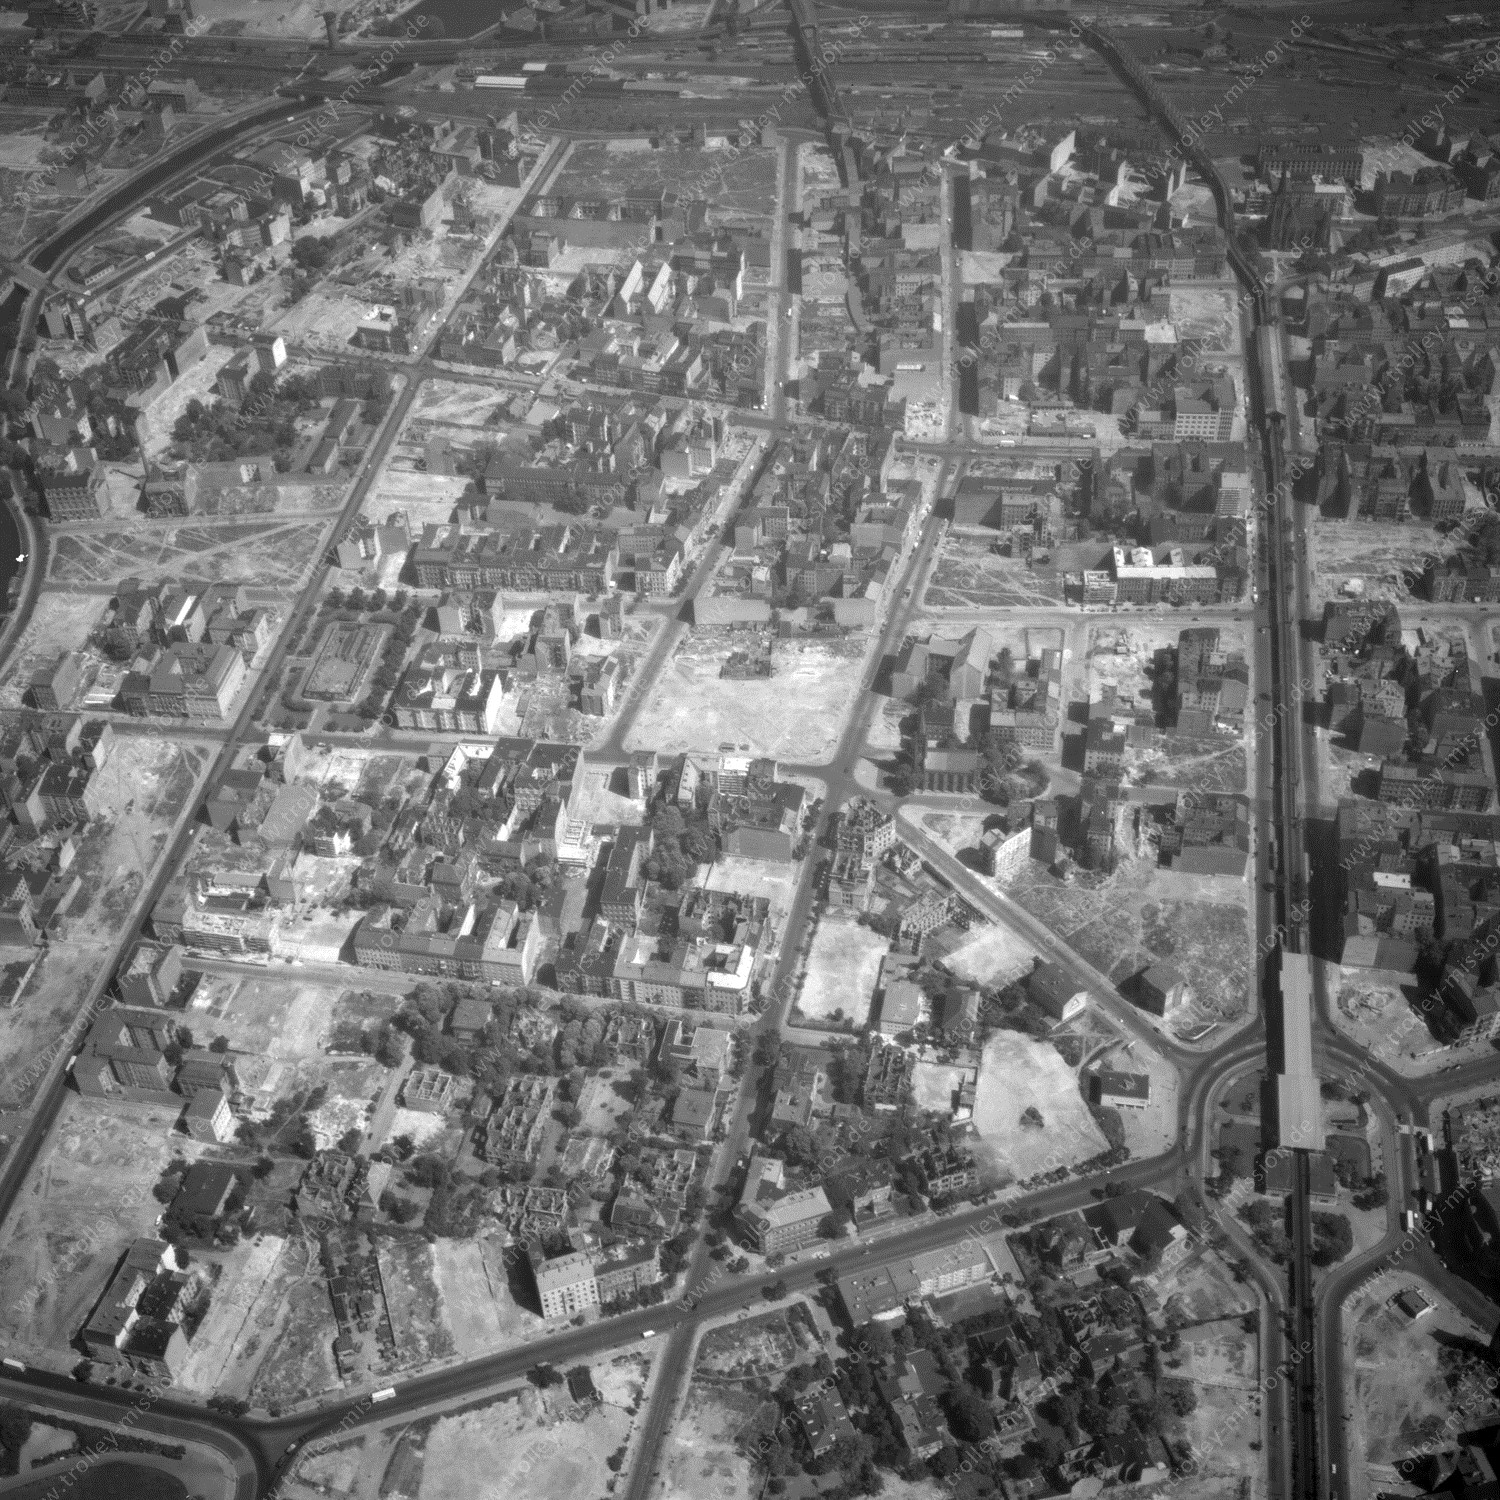 Alte Fotos und Luftbilder von Berlin - Luftbildaufnahme Nr. 08 - Historische Luftaufnahmen von West-Berlin aus dem Jahr 1954 - Flugstrecke Golf